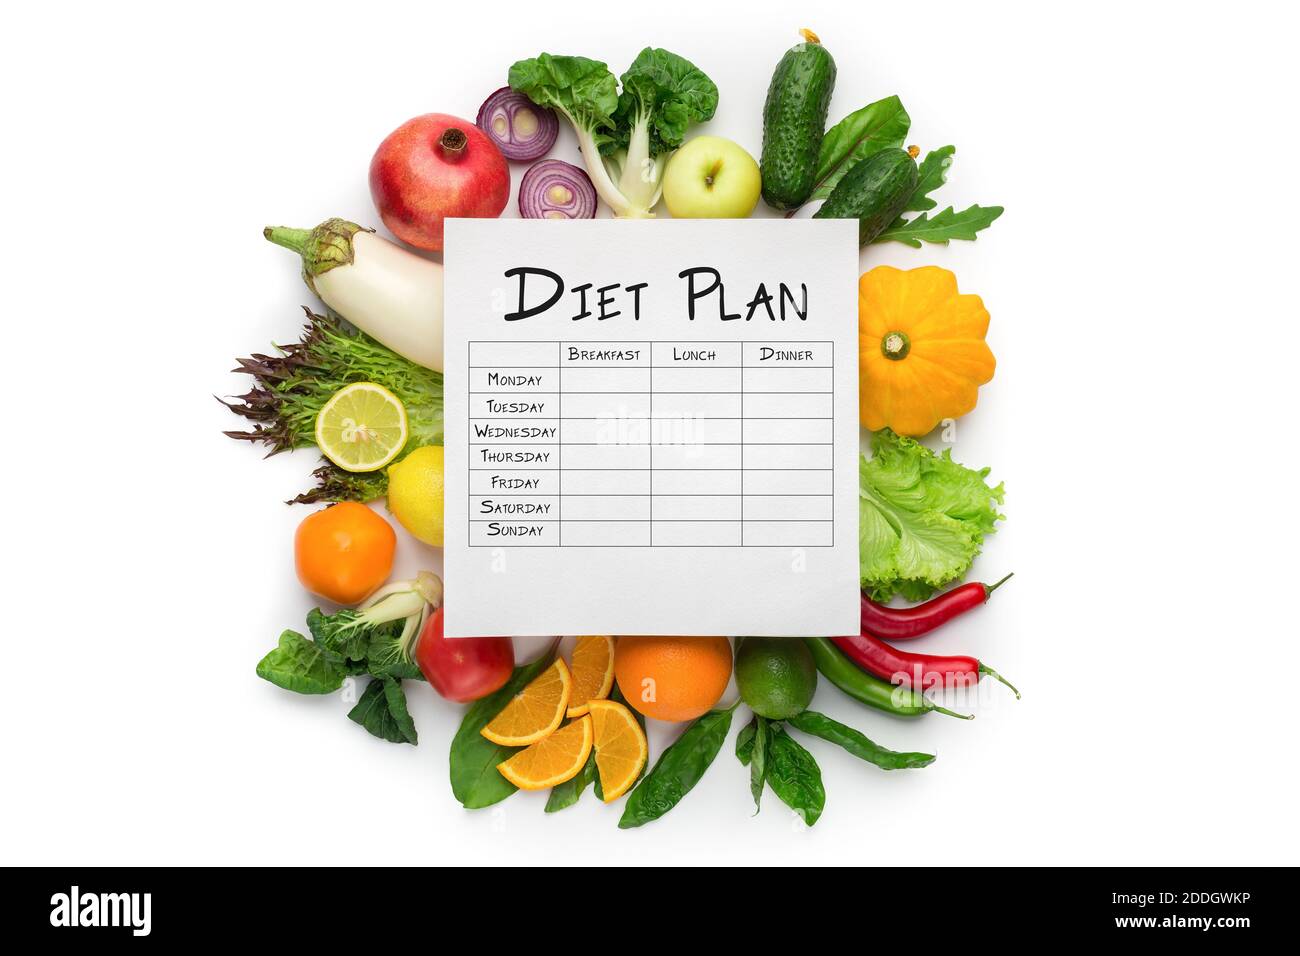 Tableau et composition du plan de régime hebdomadaire avec légumes frais Arrière-plan blanc Banque D'Images